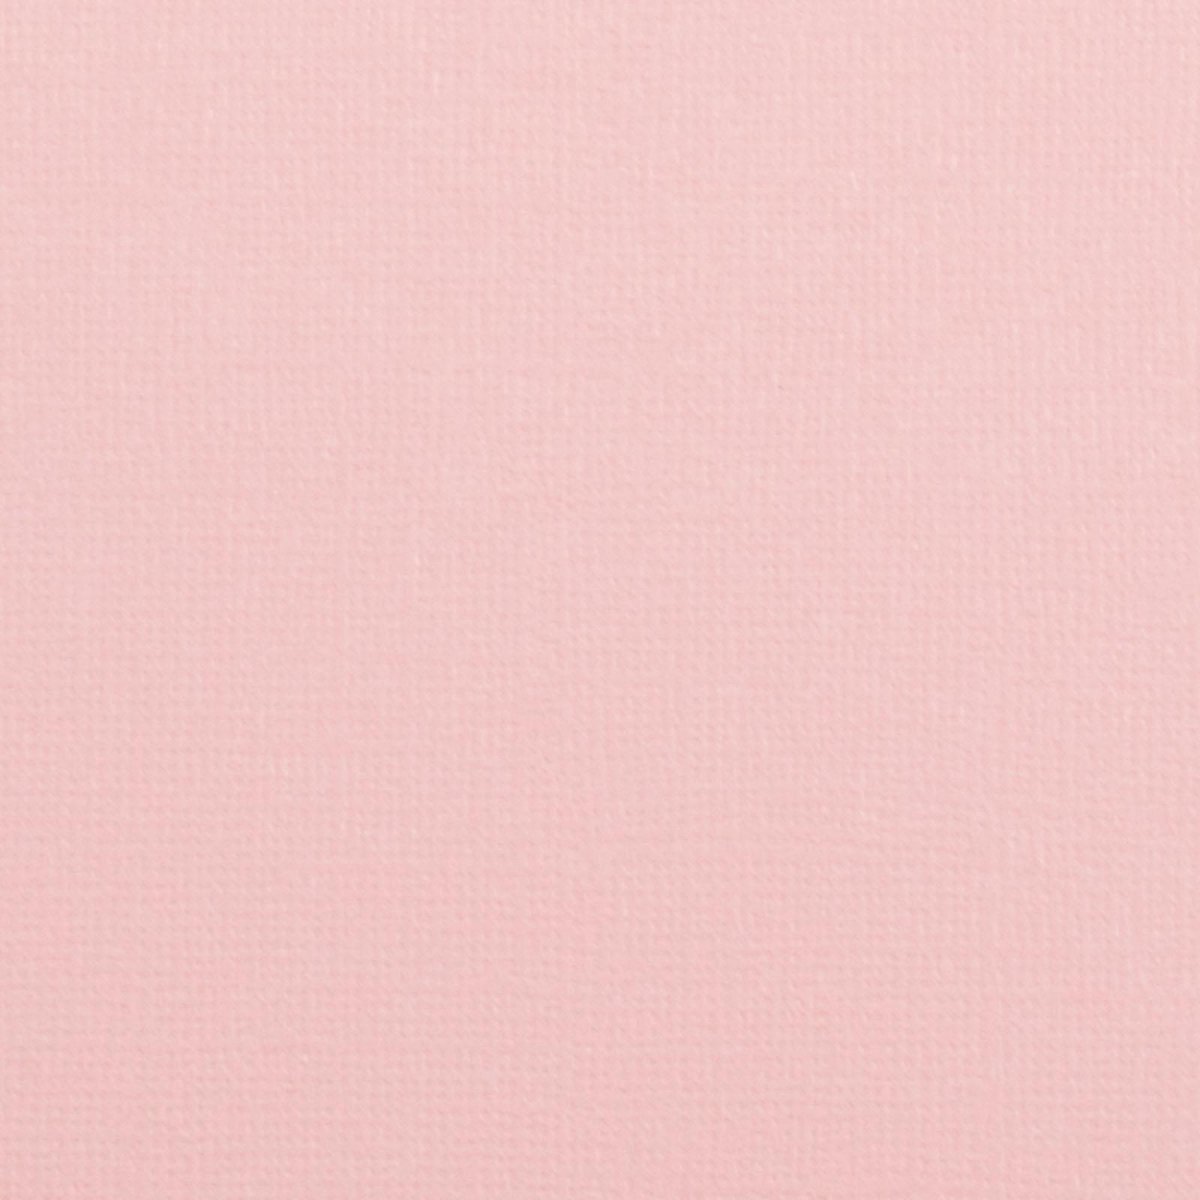 Florence Karton - Rose - 305x305mm - Ruwe textuur - 216g